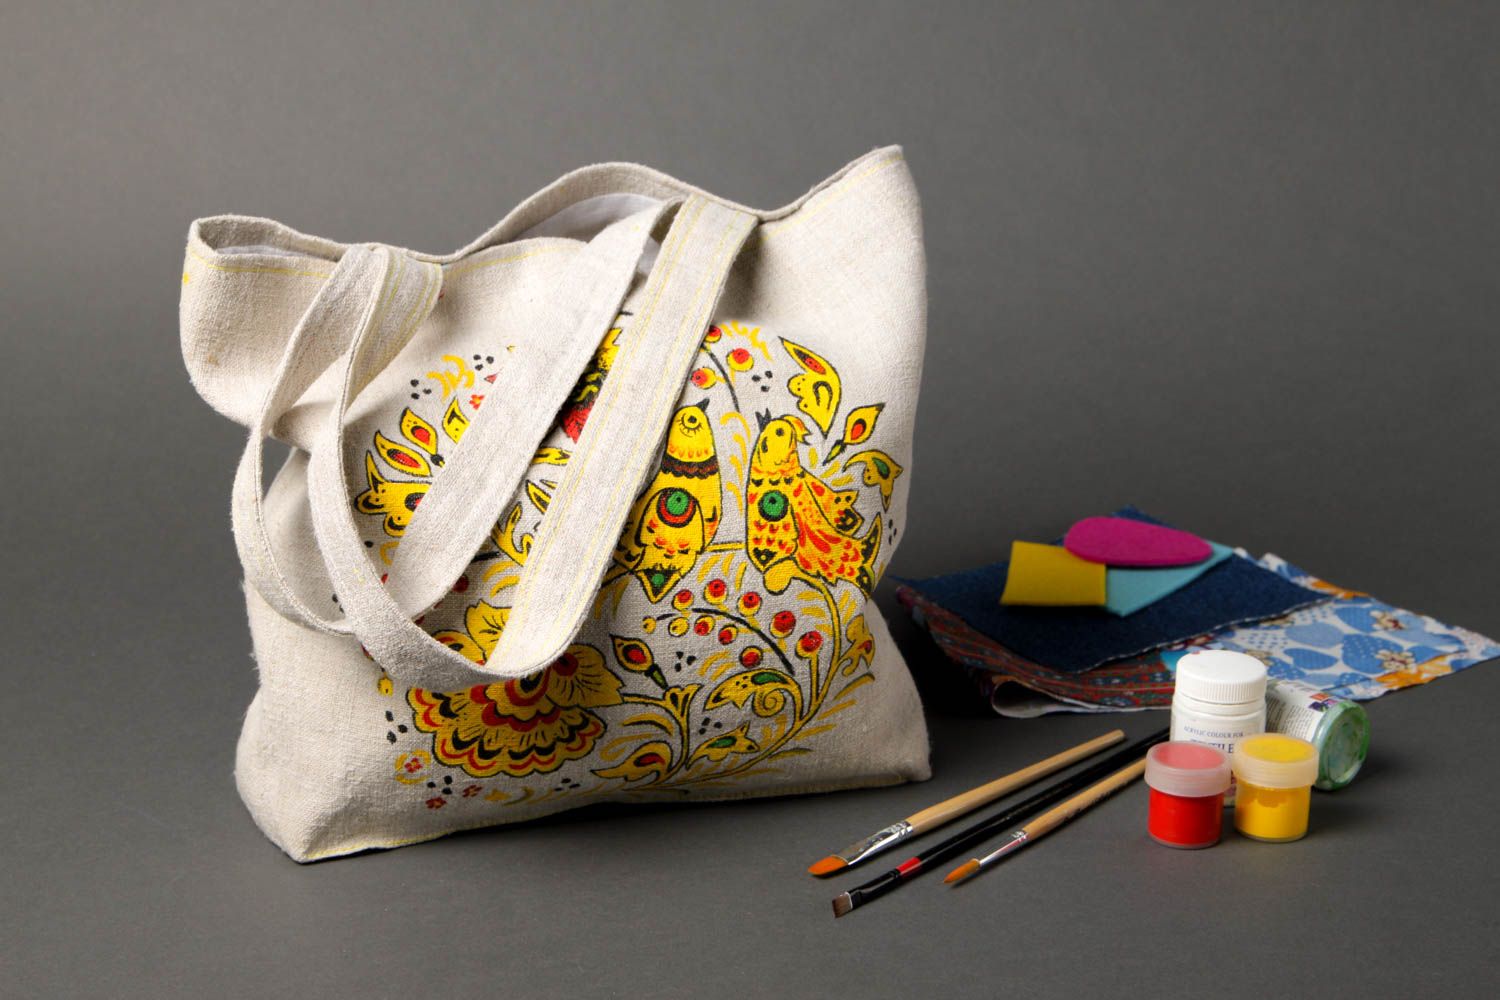 Сумка ручной работы женская сумка авторская тканевая сумка с ярким рисунком фото 1